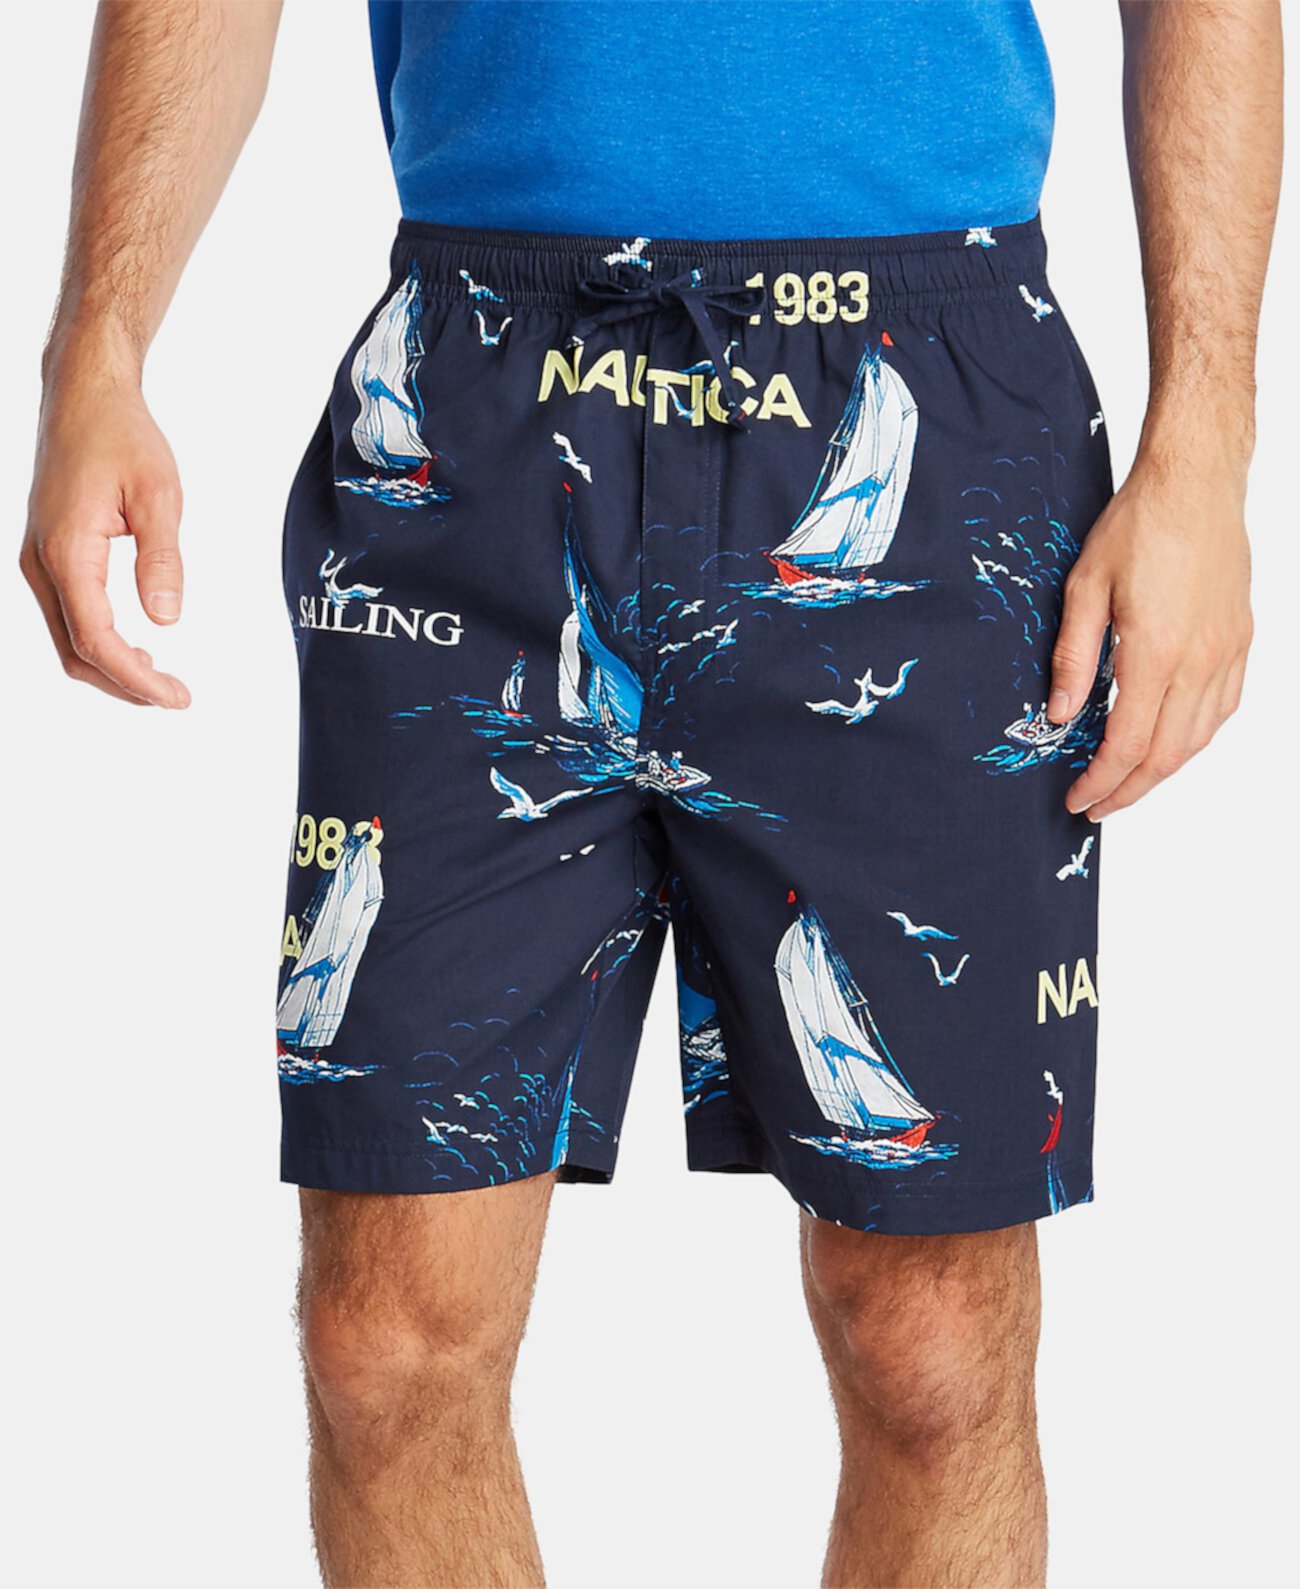 Мужские хлопковые пижамные шорты с принтом парусника Nautica